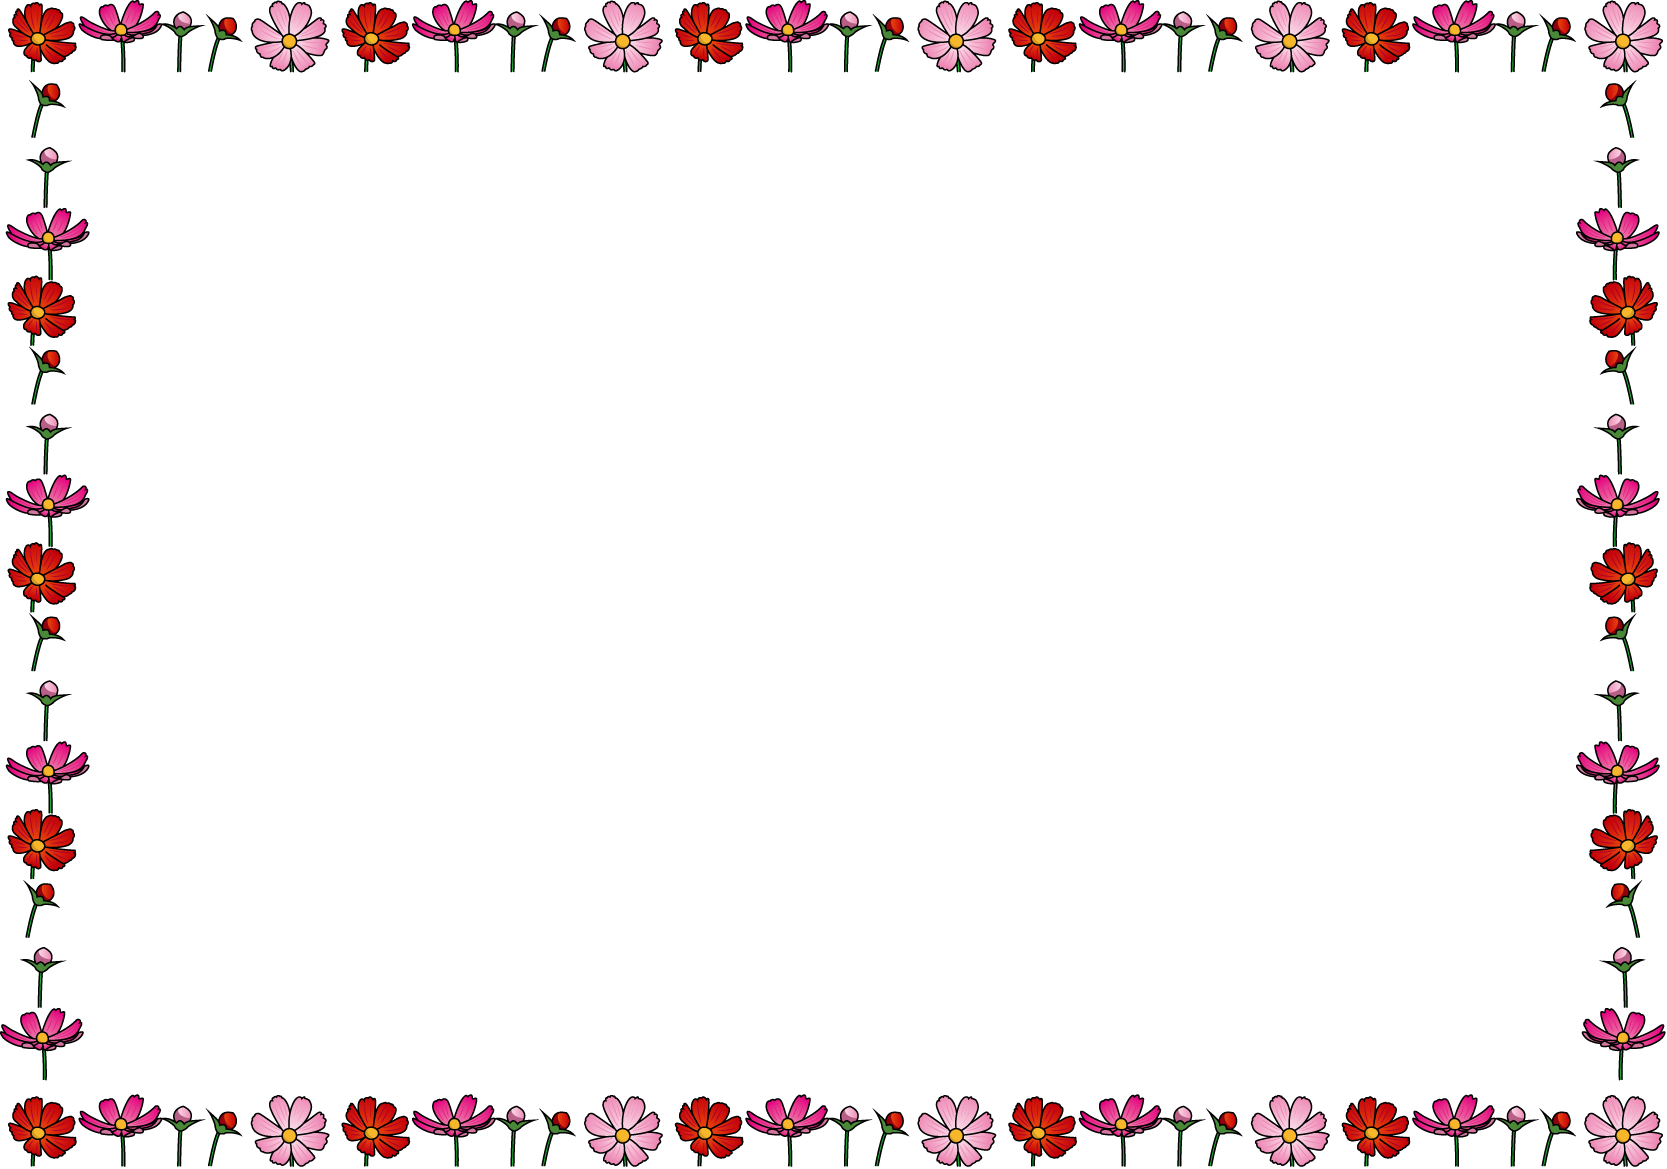 秋冬の花の飾り枠16 コスモス 花の無料イラスト素材 イラストポップ